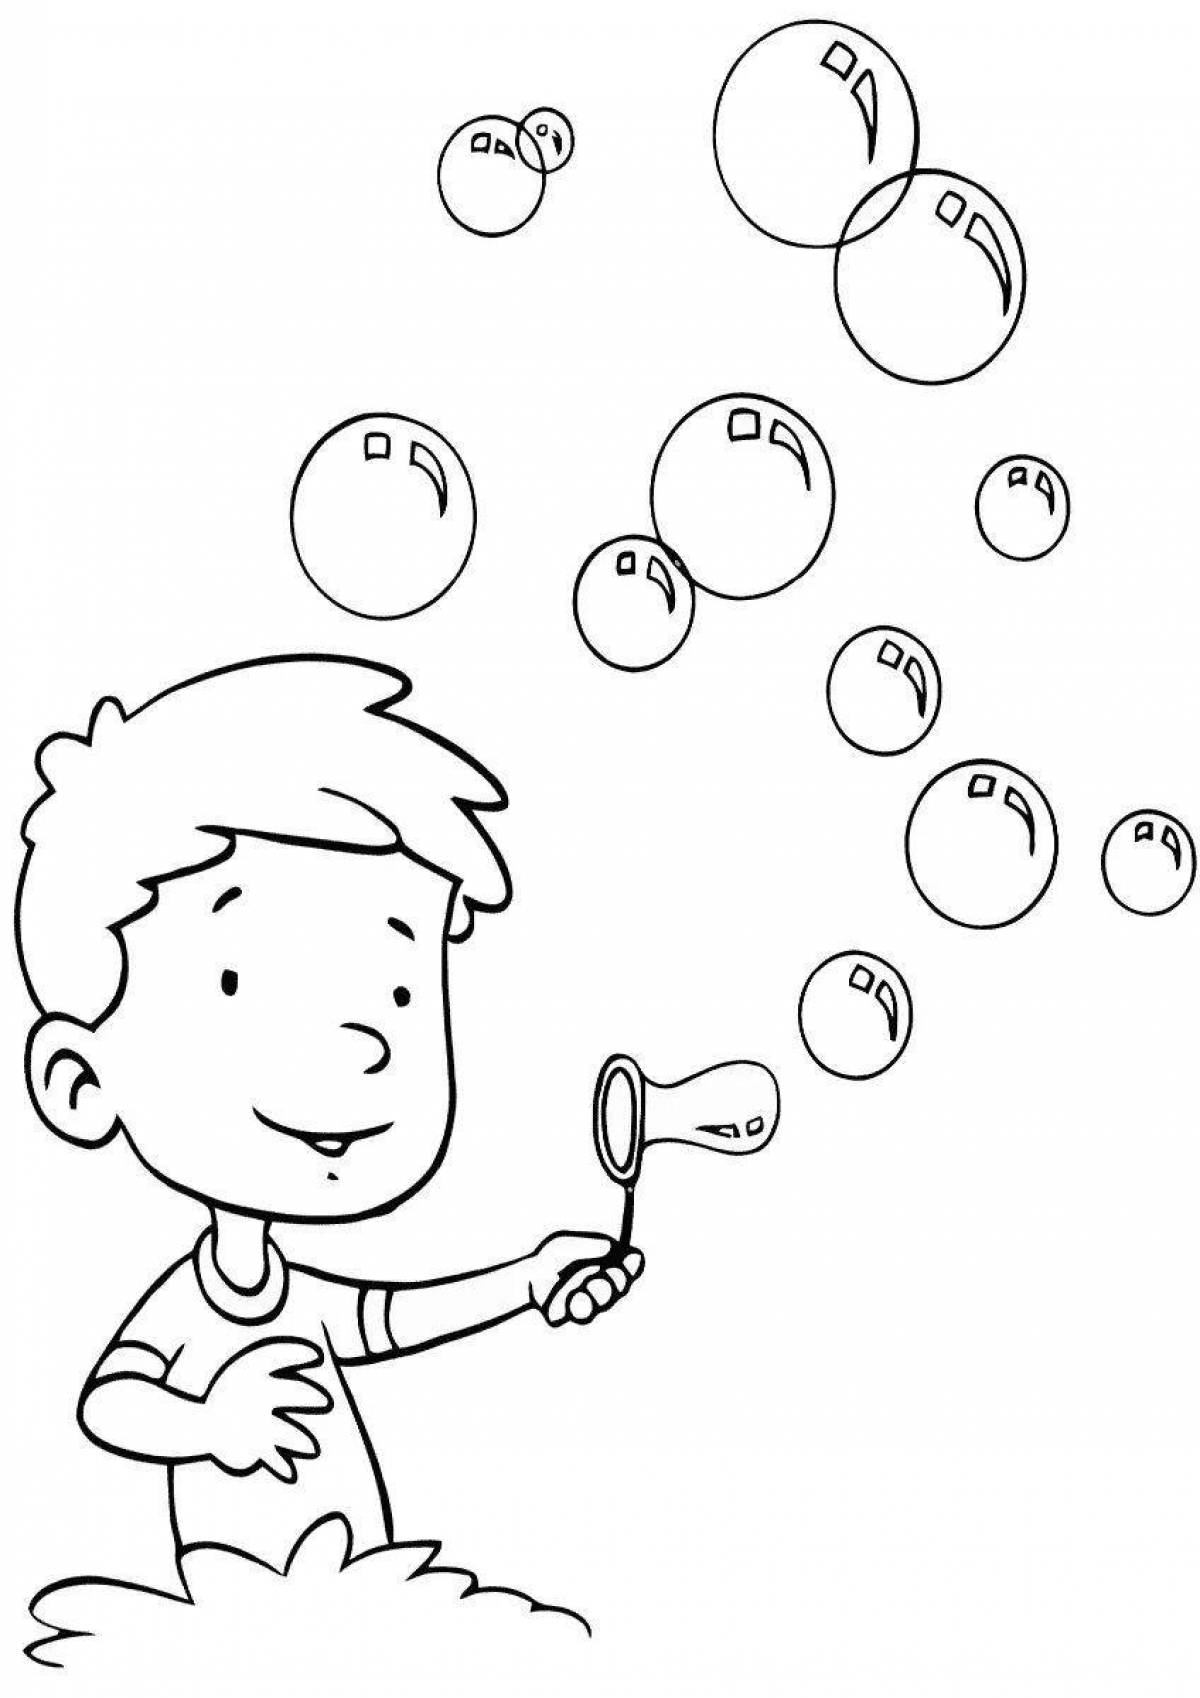 Пузыри раскраска для детей